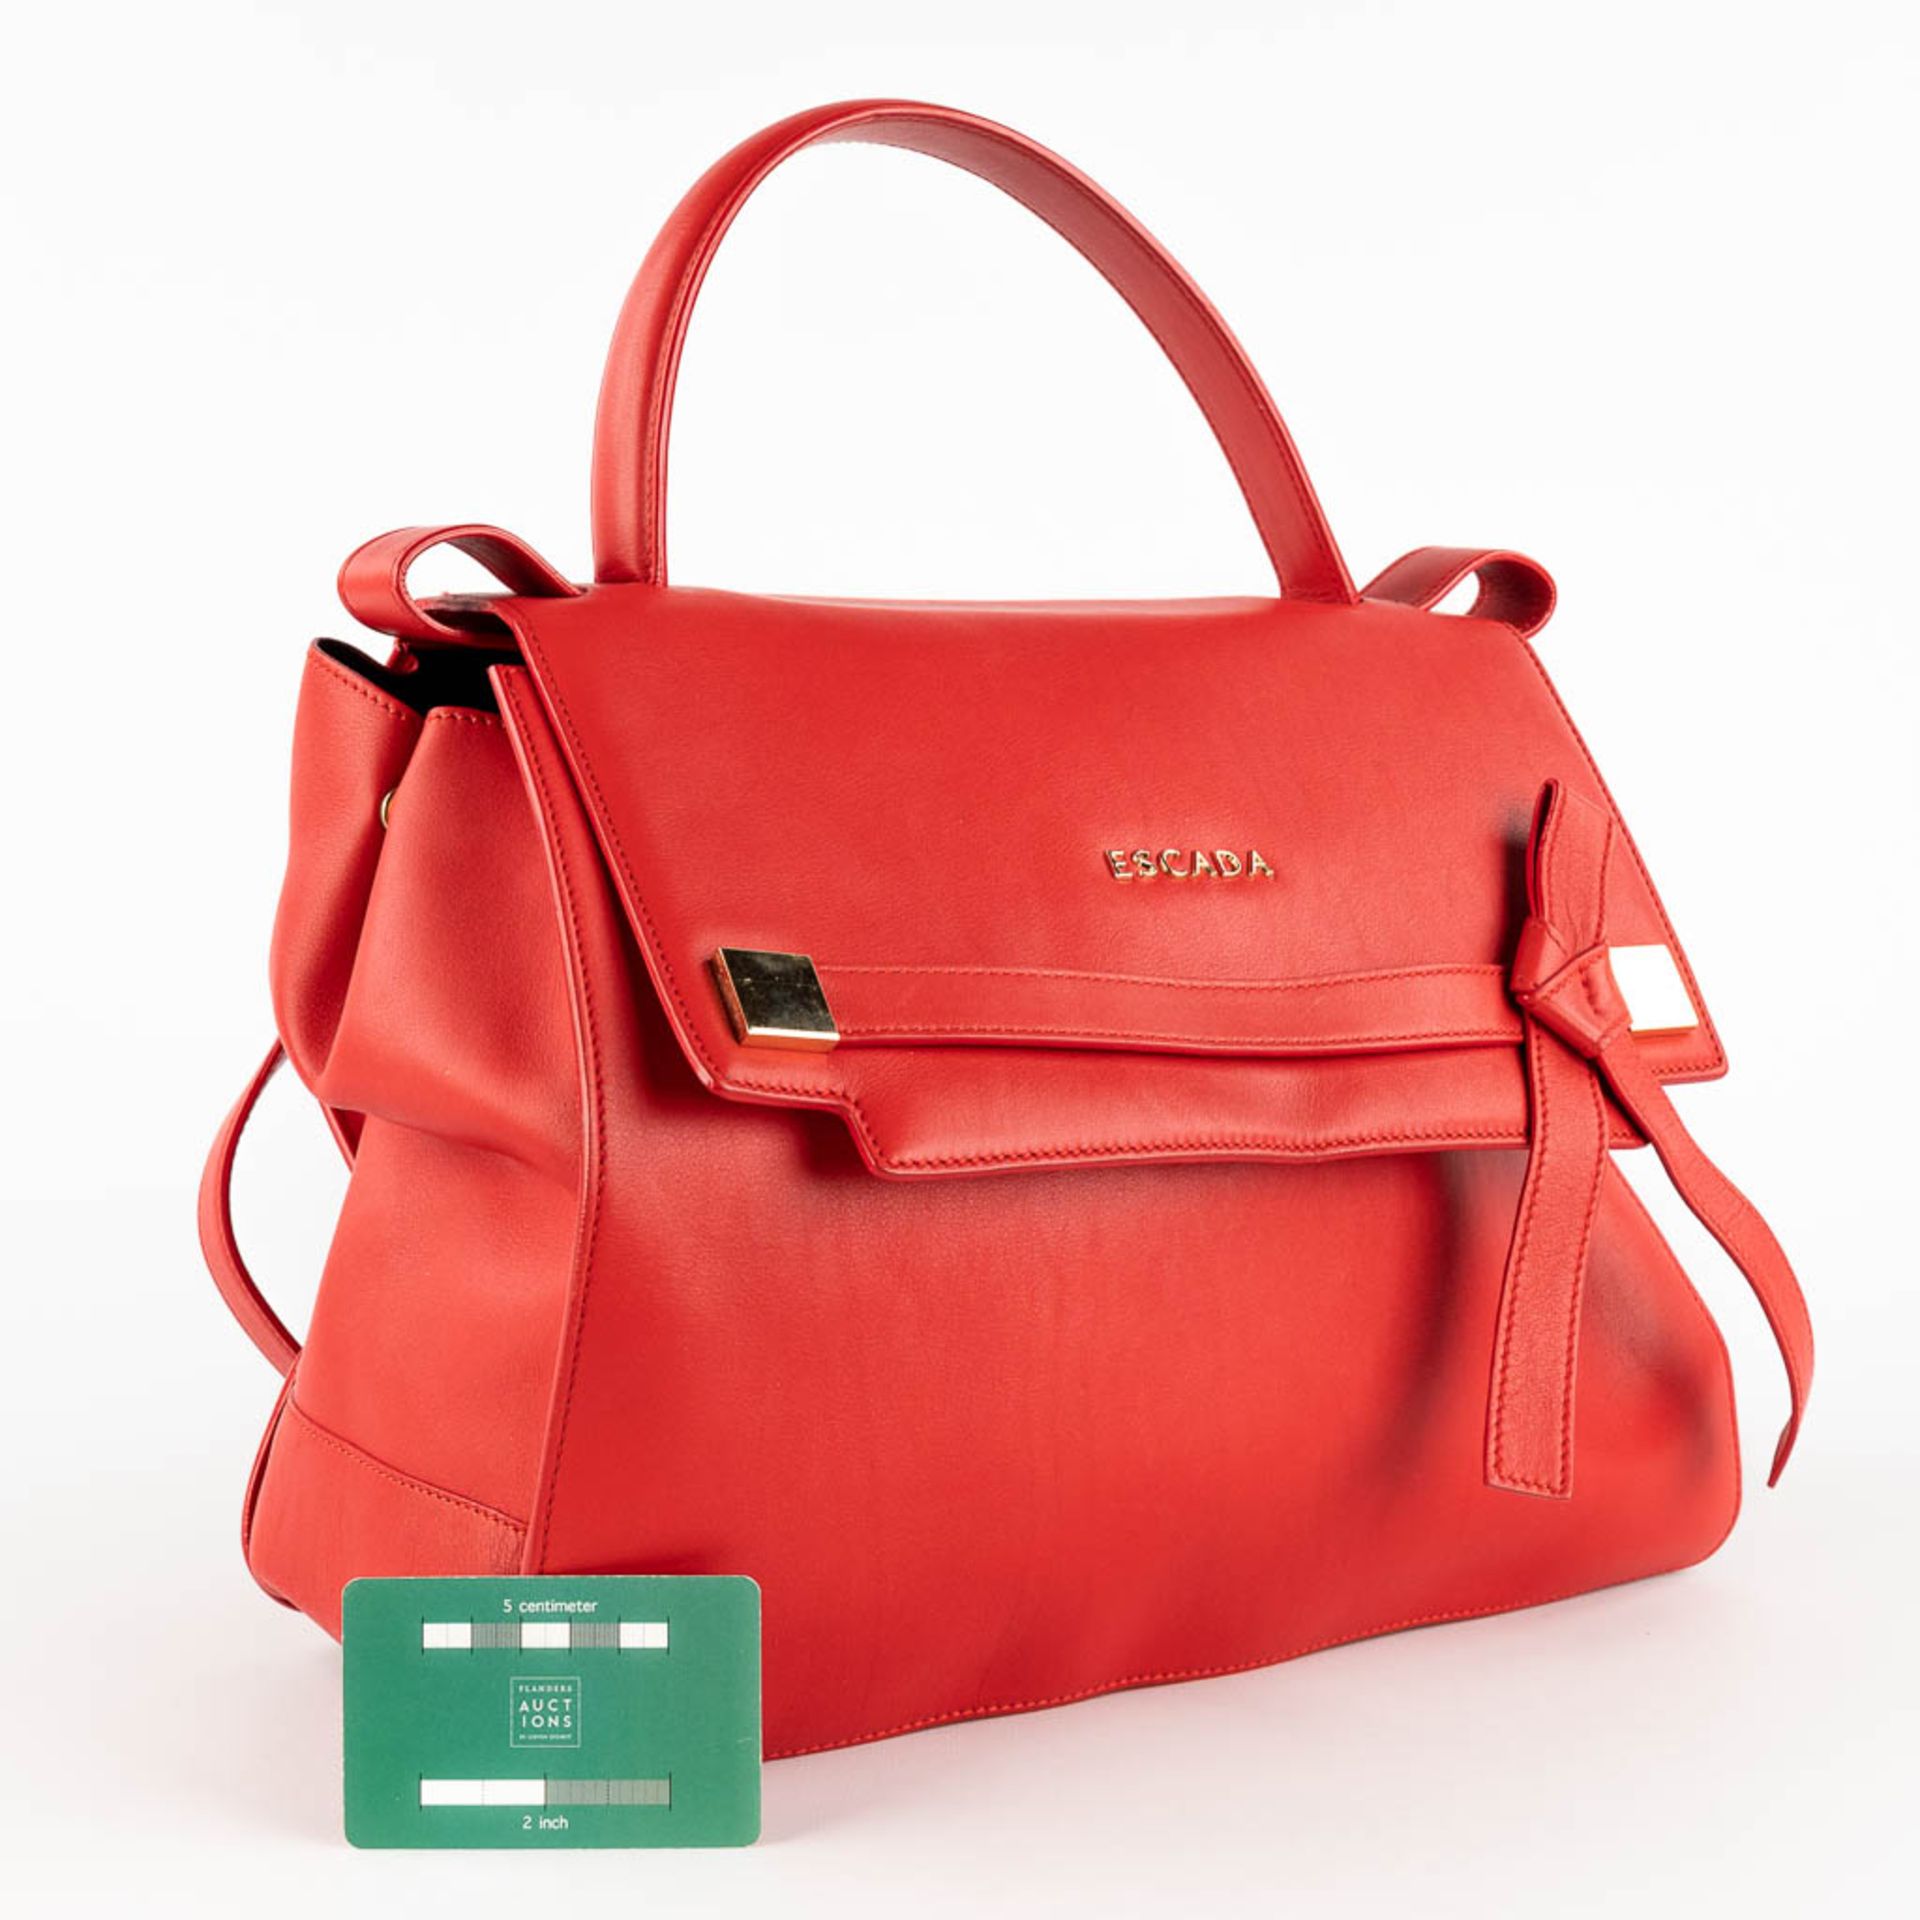 Escada, a handbag made of red leather. (W:33 x H:28 cm) - Image 2 of 17